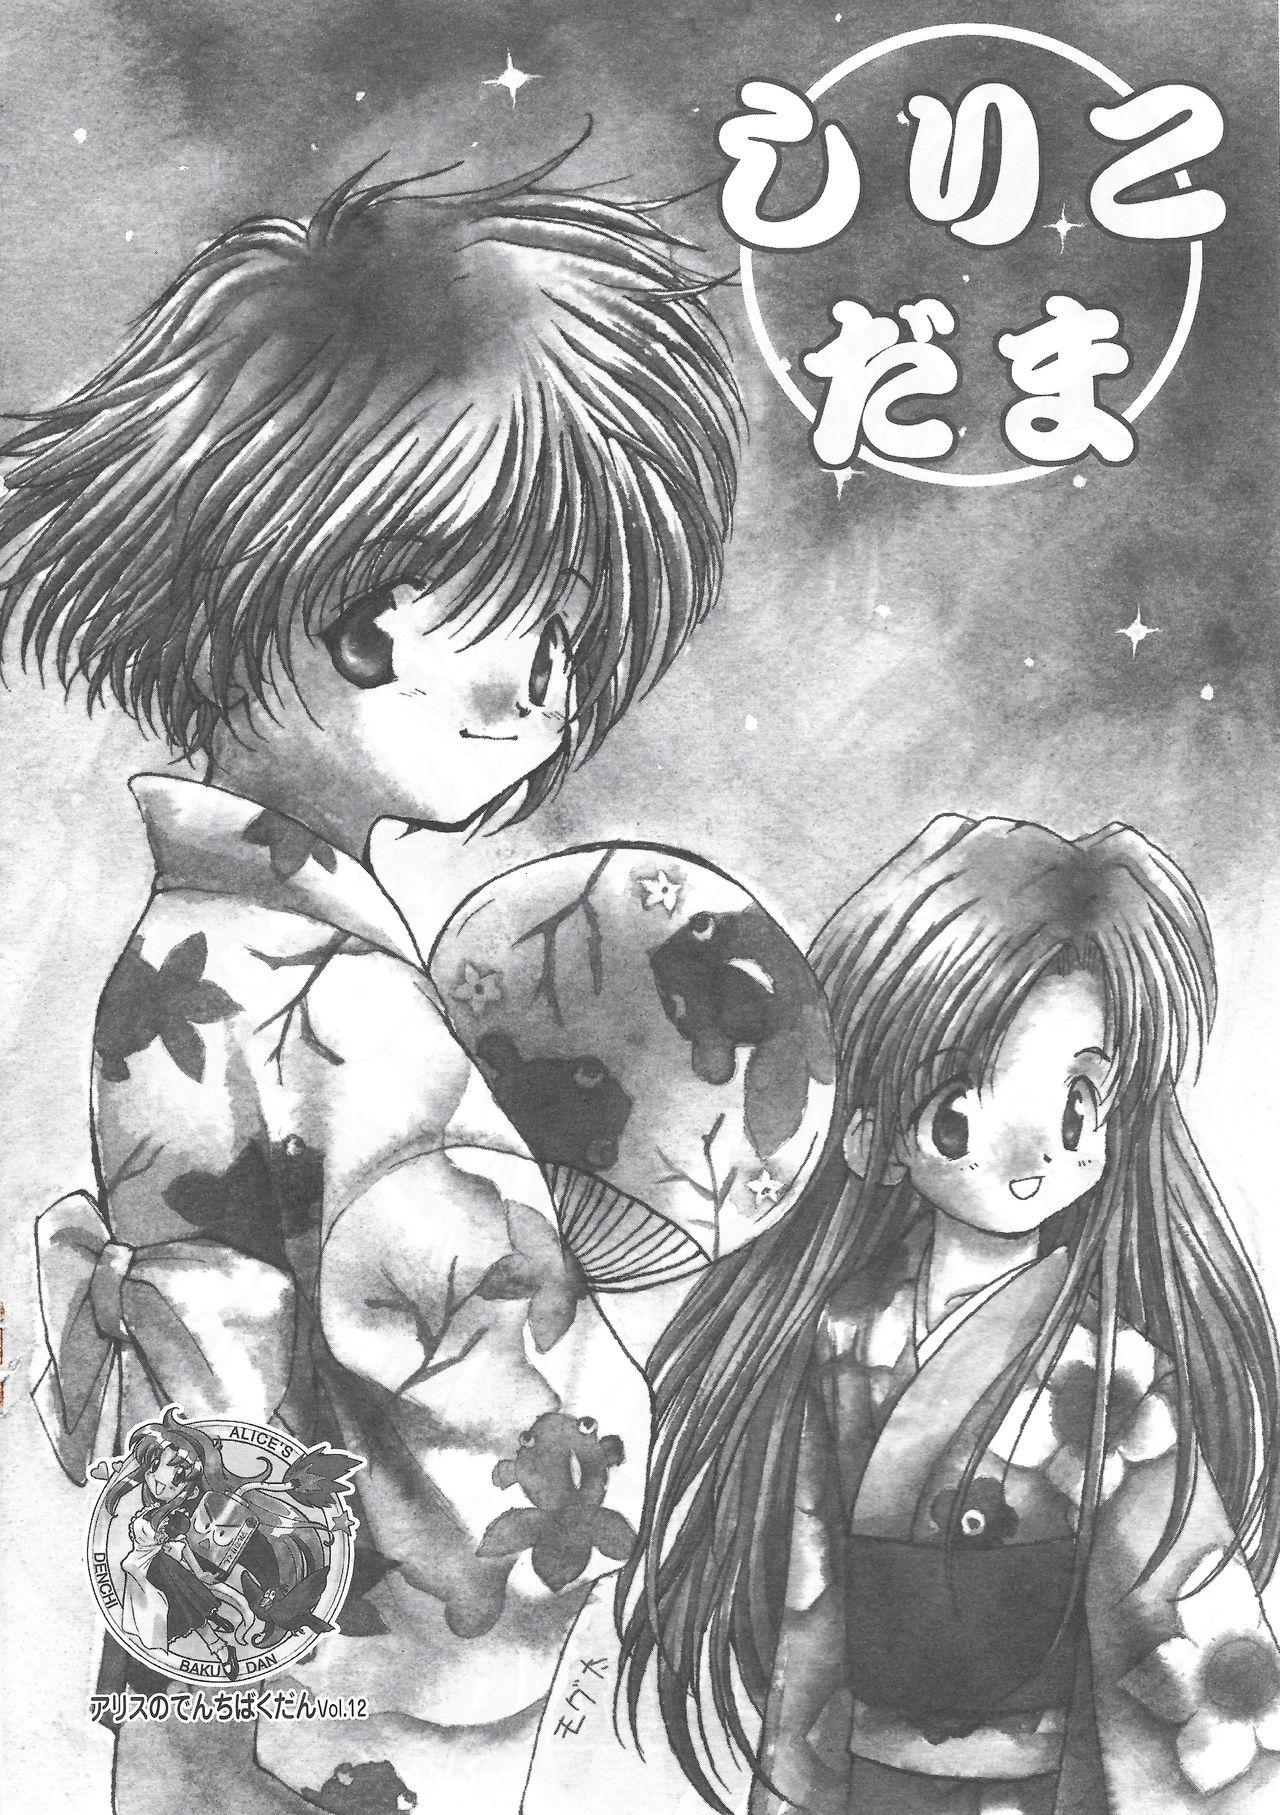 Arisu no Denchi Bakudan Vol. 12 0